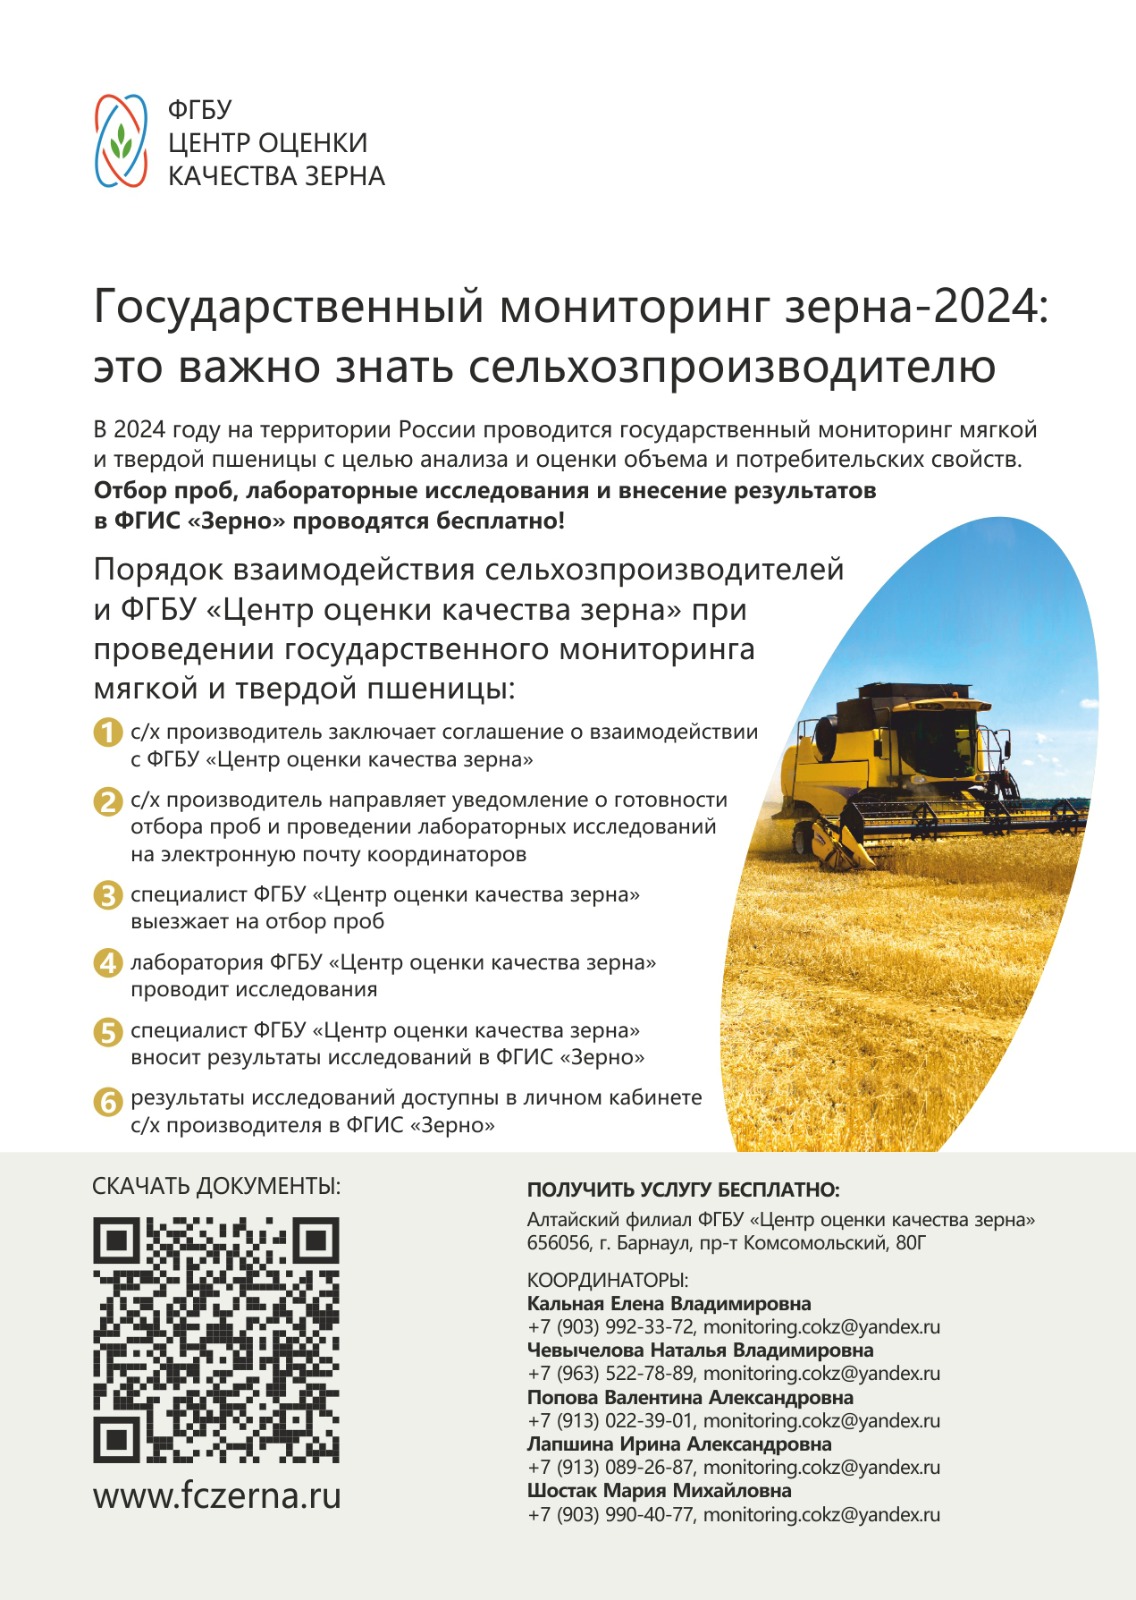 Внимание! Государственный мониторинг зерна урожая 2024.